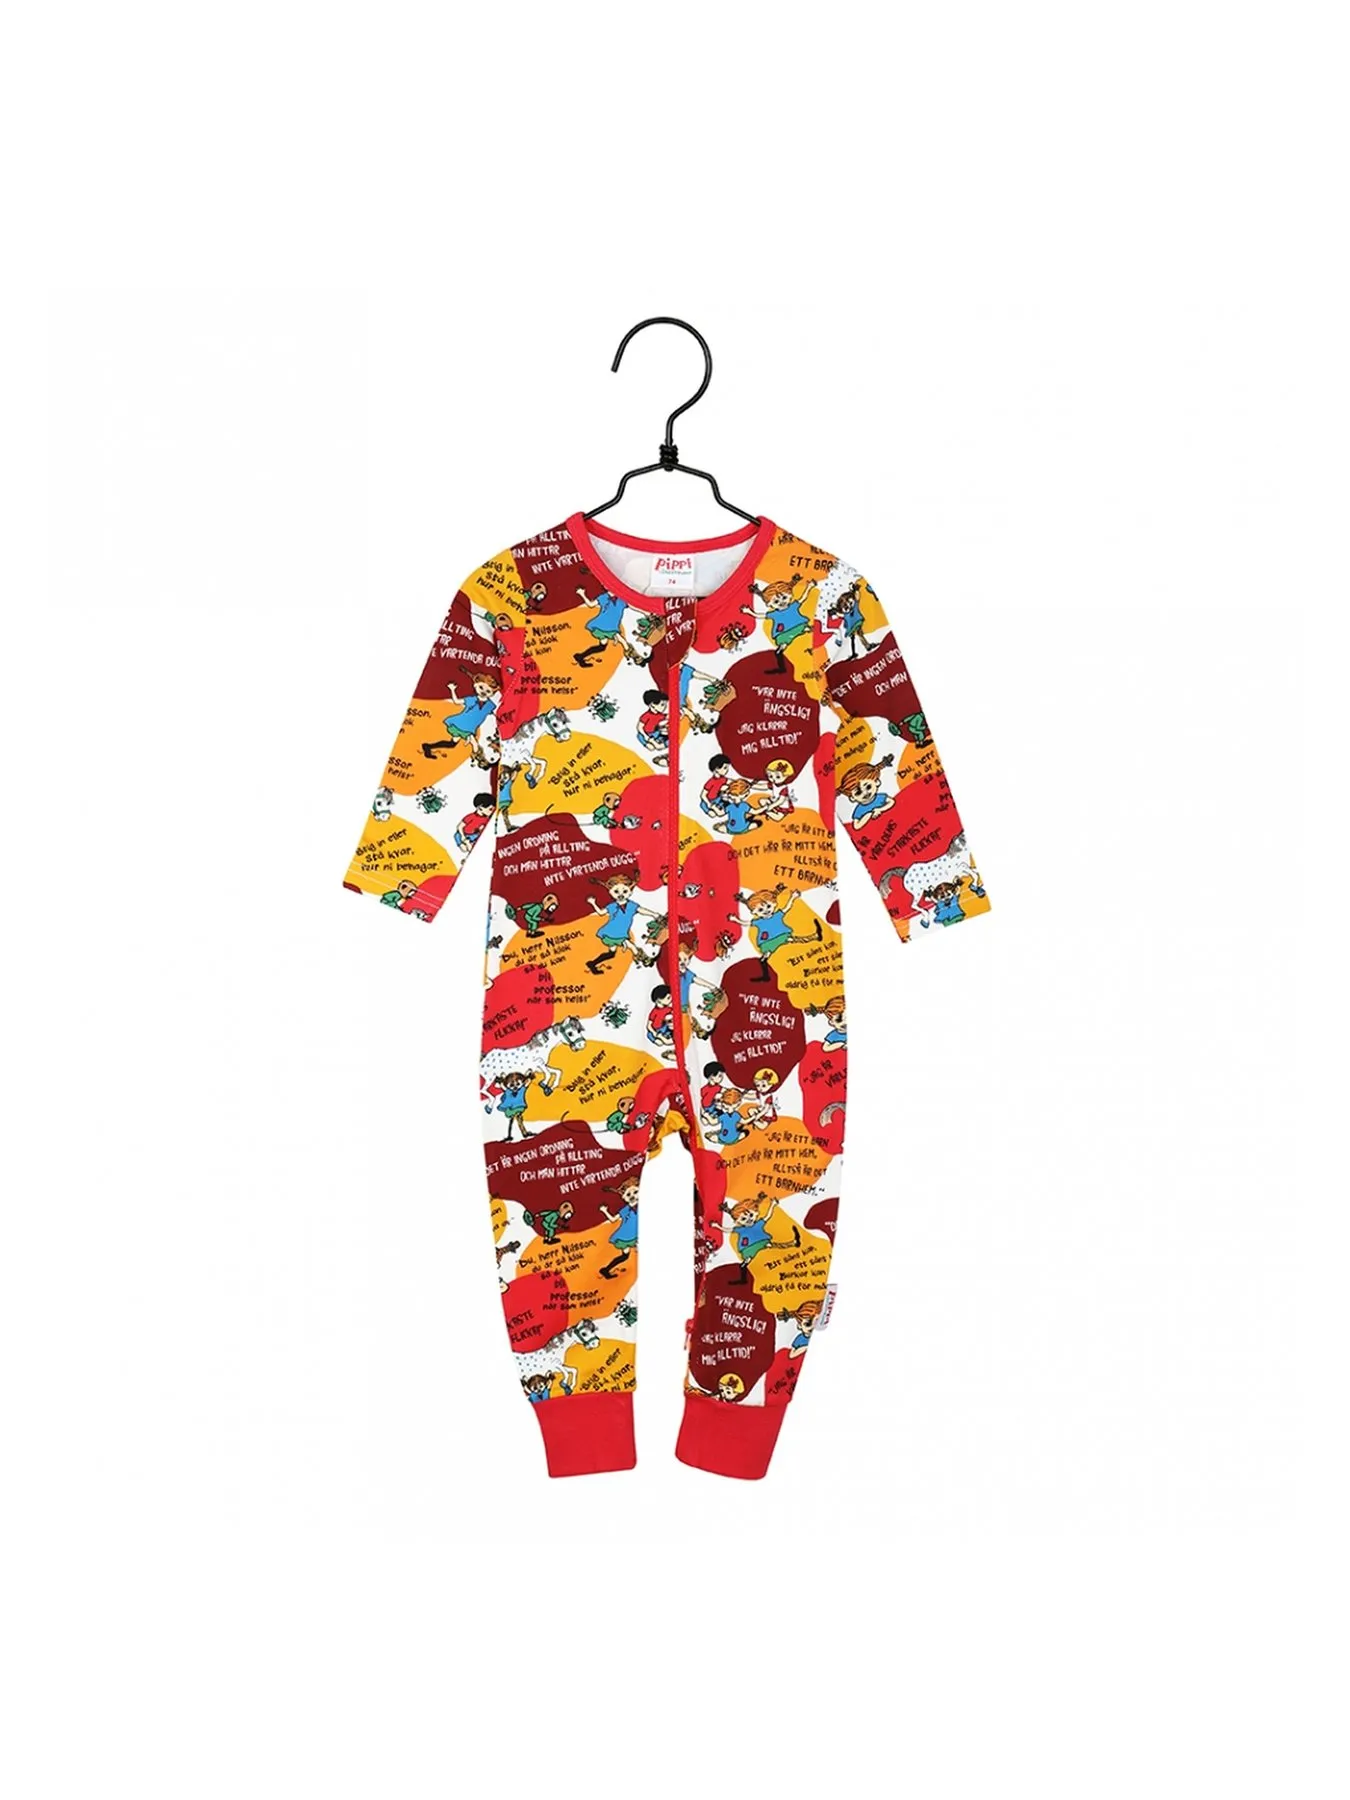 Pyjamas Pippi Långstrump - Röd